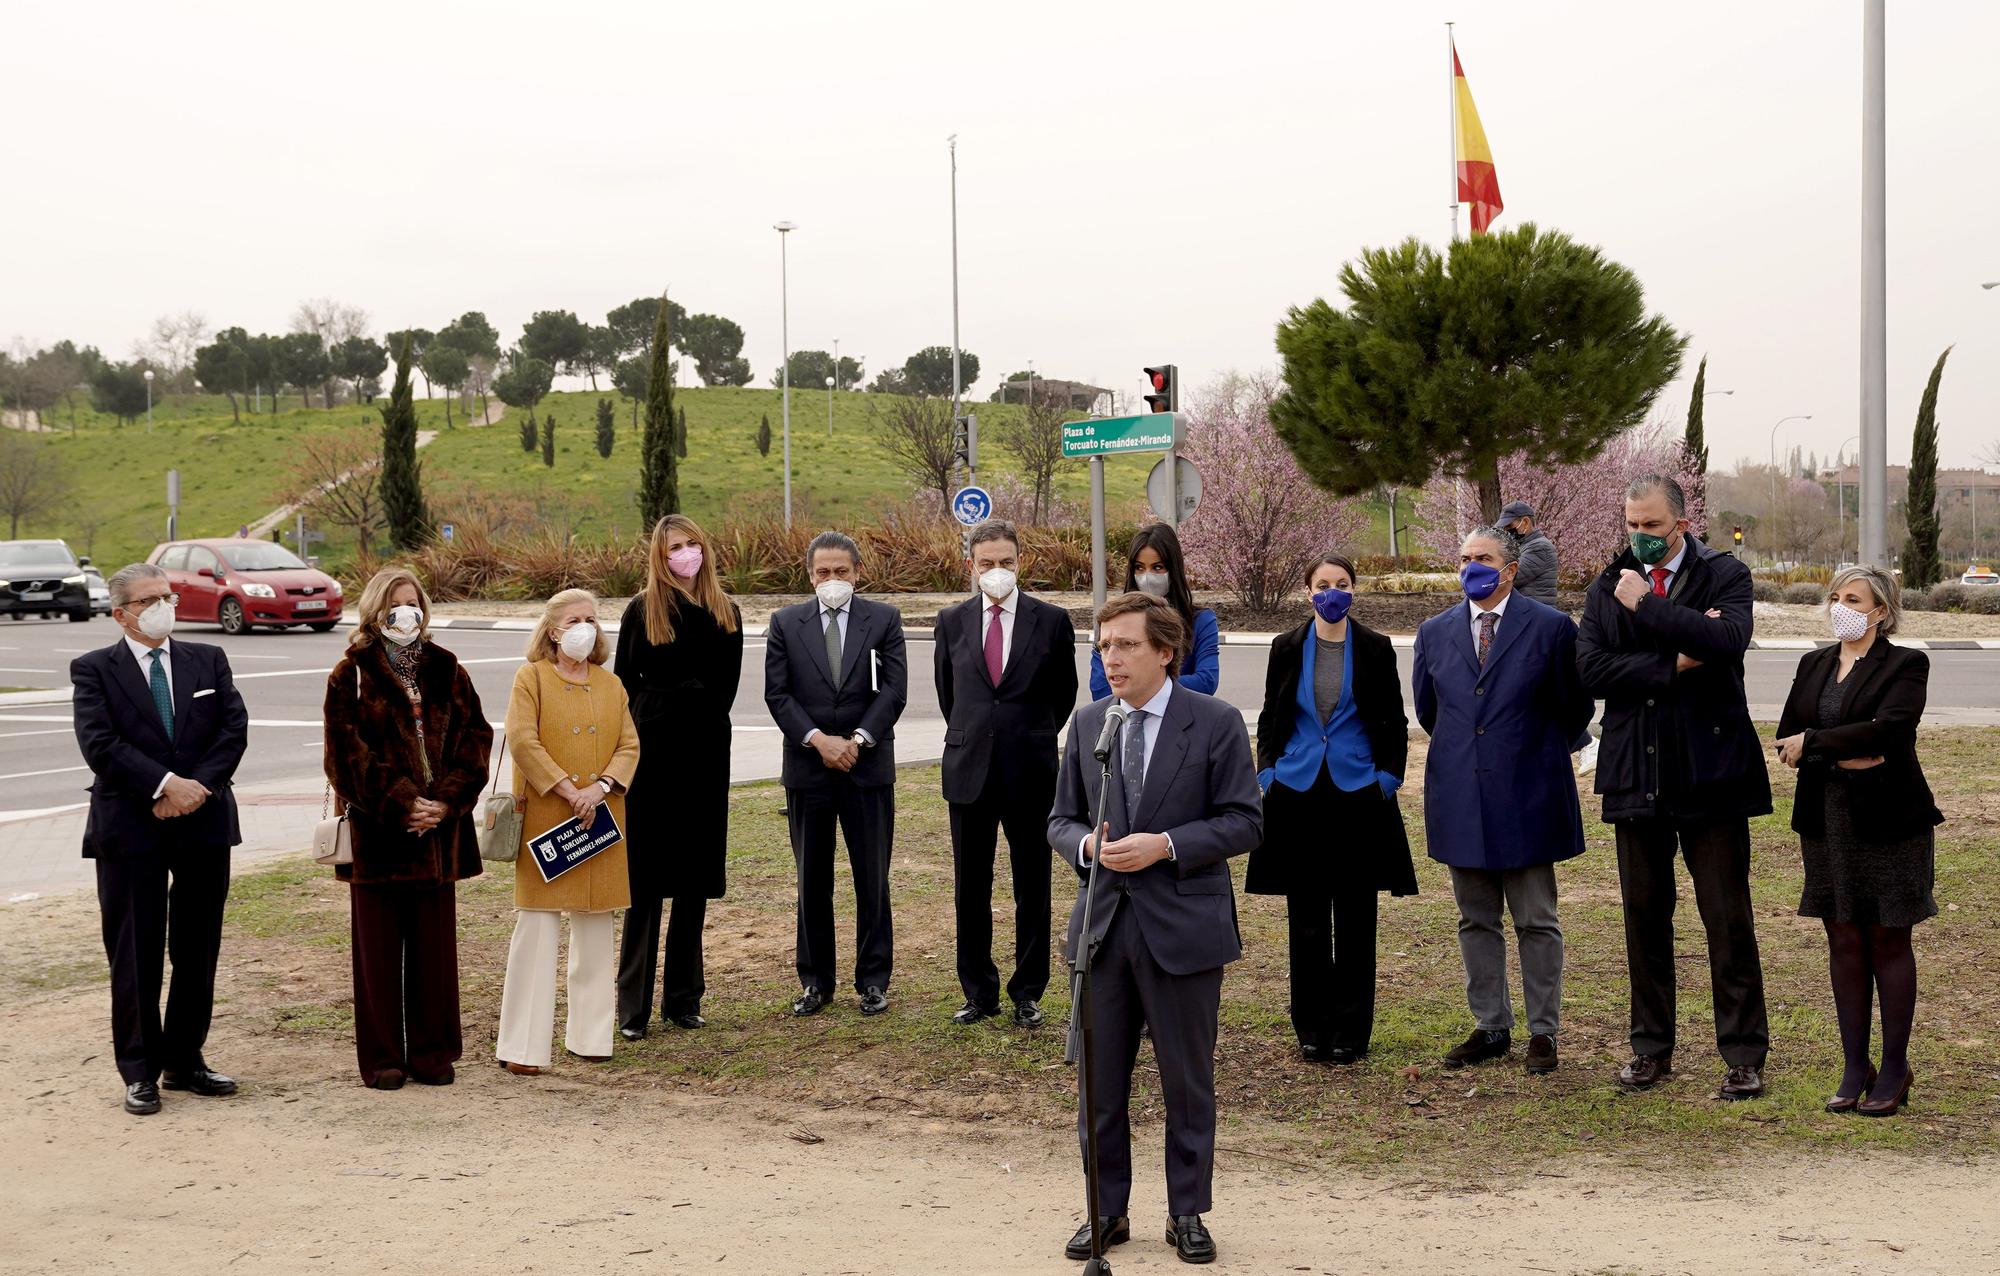 Homenaje en Madrid a Torcuato Fernández-Miranda con la concesión de una plaza en Fuencarral